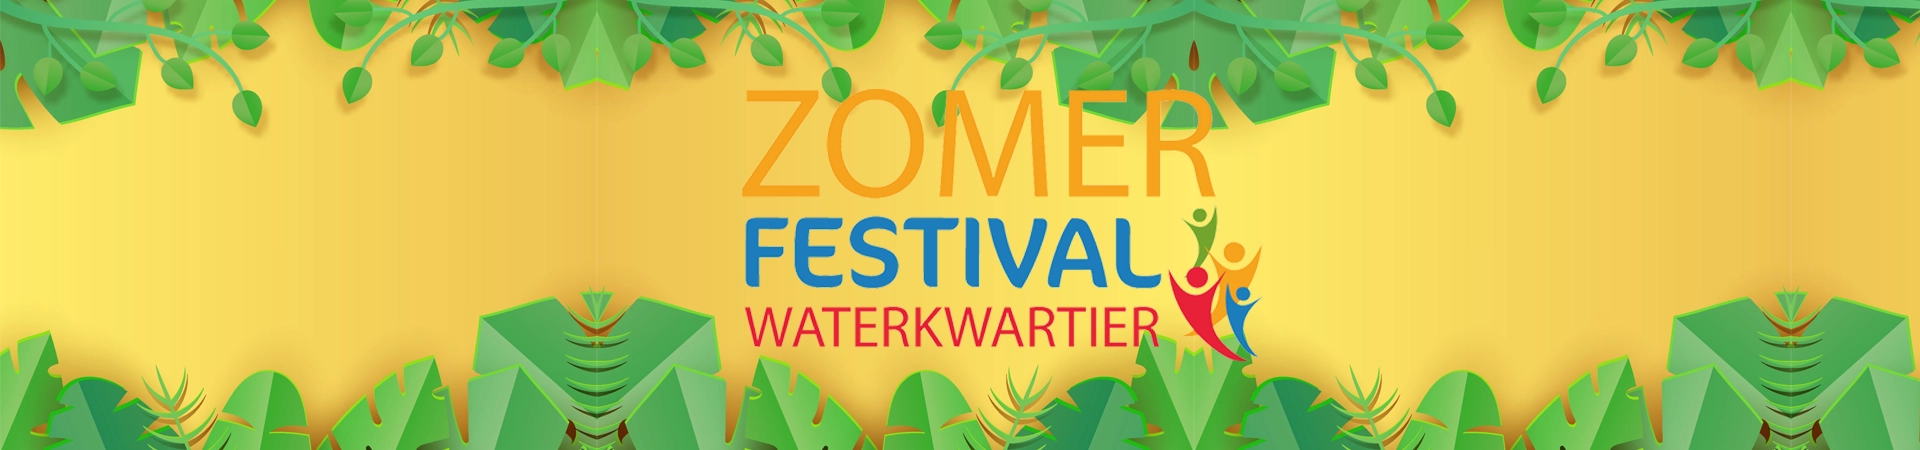 Zomerfestifal Gemeente zutphen Stichting waterkwartier jongen activiteiten